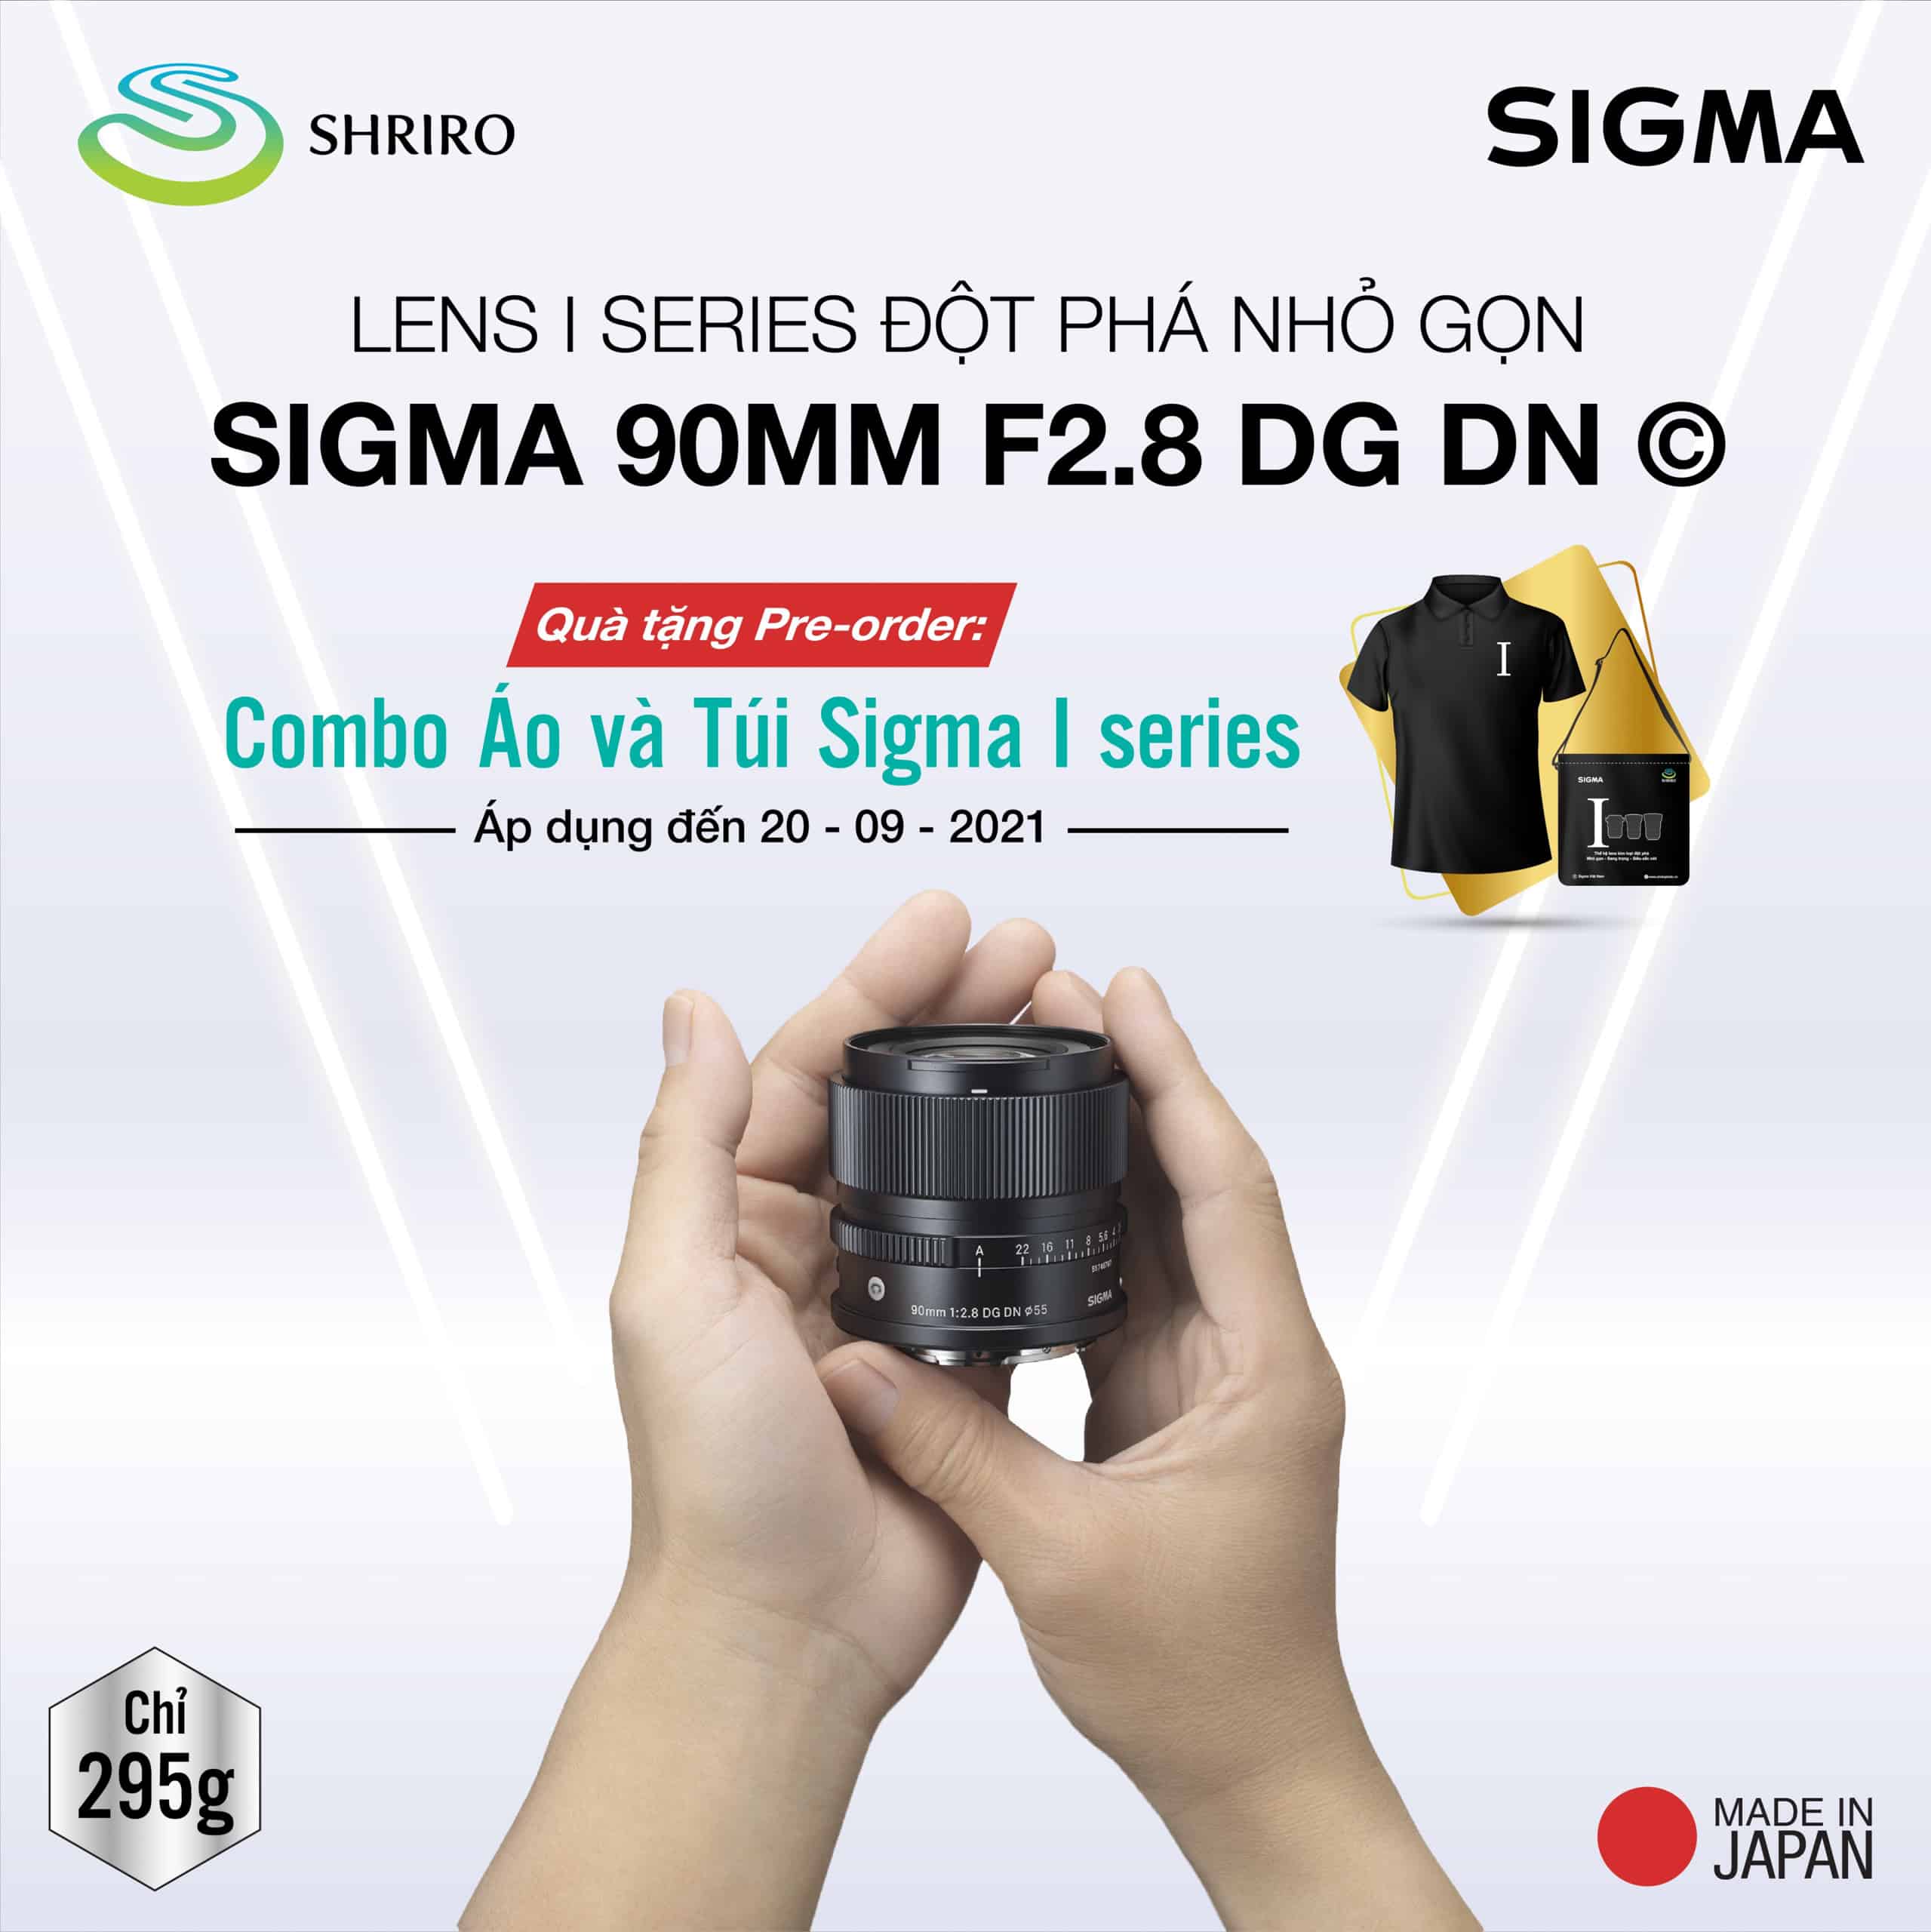 Đặt trước bộ đôi Sigma 90mm F2.8 DG DN và Sigma 24mm F2 DG DN mới nhận kèm quà tặng hấp dẫn